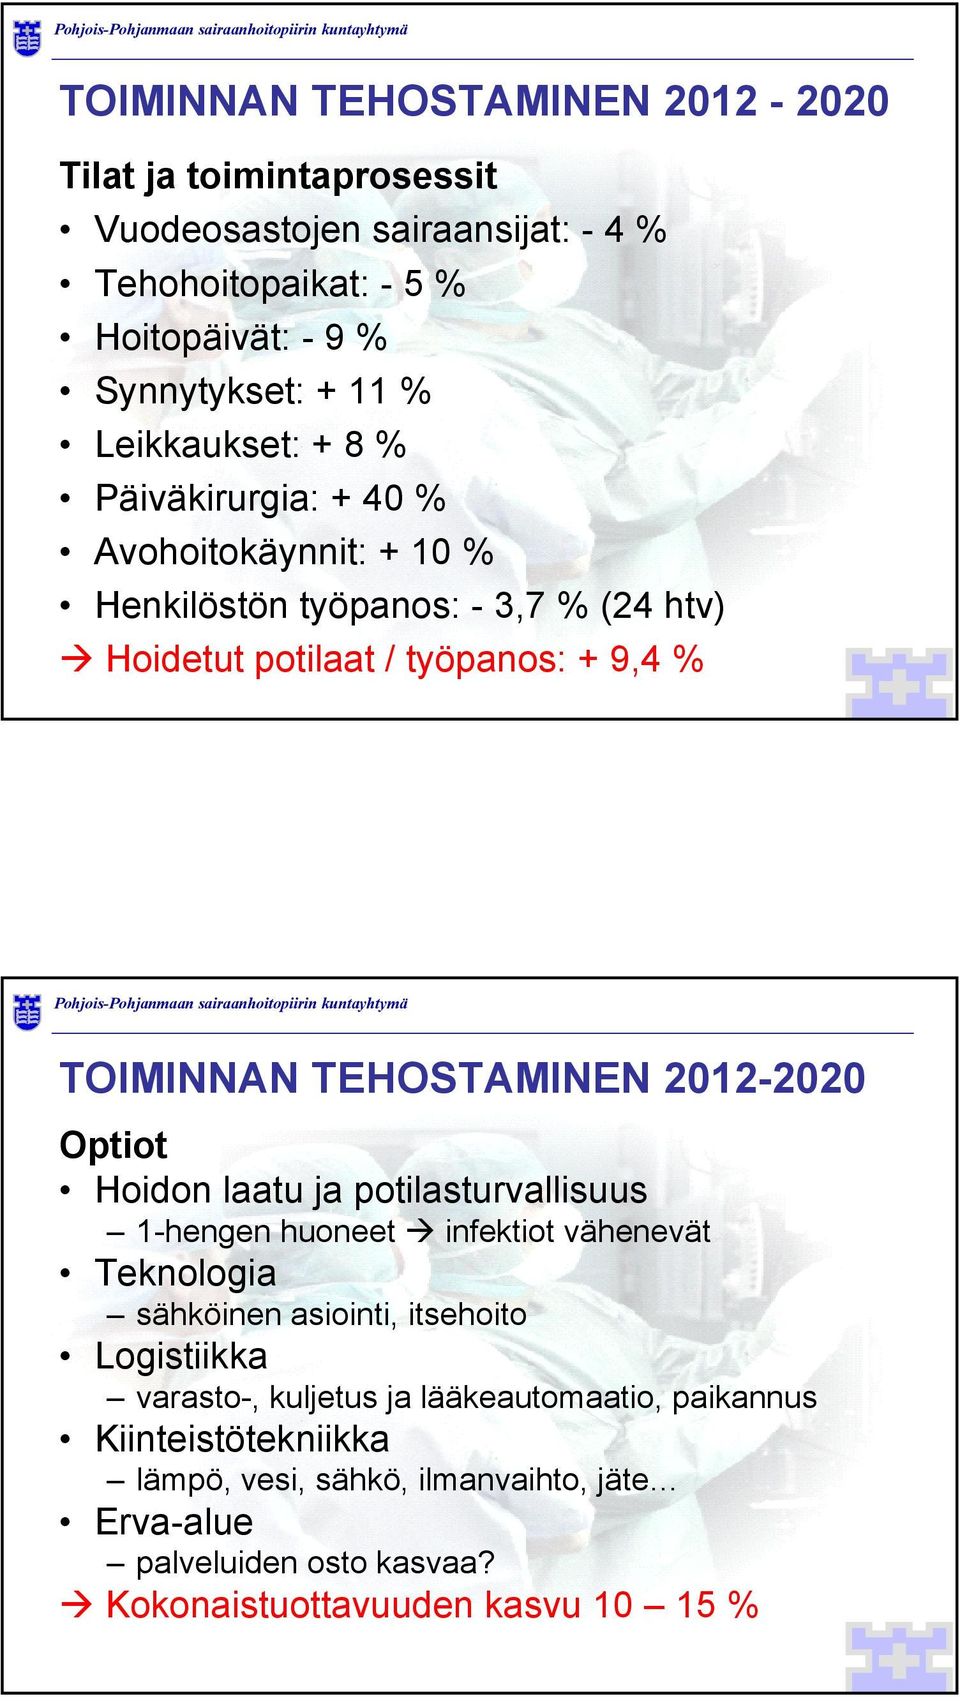 TEHOSTAMINEN 2012-2020 Optiot Hoidon laatu ja potilasturvallisuus 1-hengen huoneet infektiot vähenevät Teknologia sähköinen asiointi, itsehoito Logistiikka